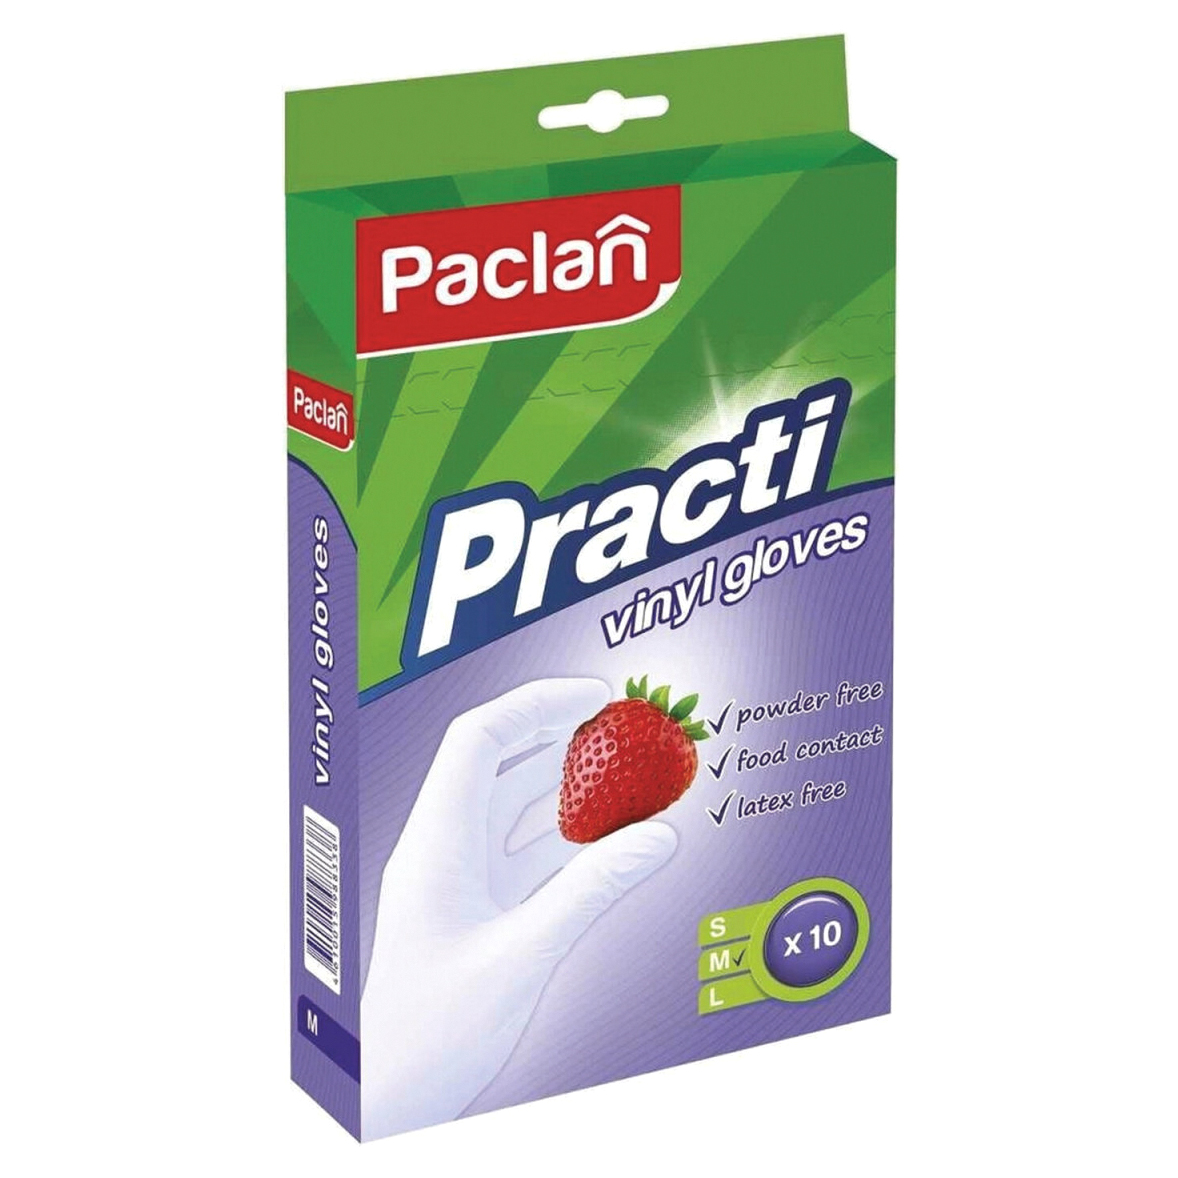 перчатки paclan виниловые размер m 100 шт Перчатки Paclan Practi виниловые M 10 шт